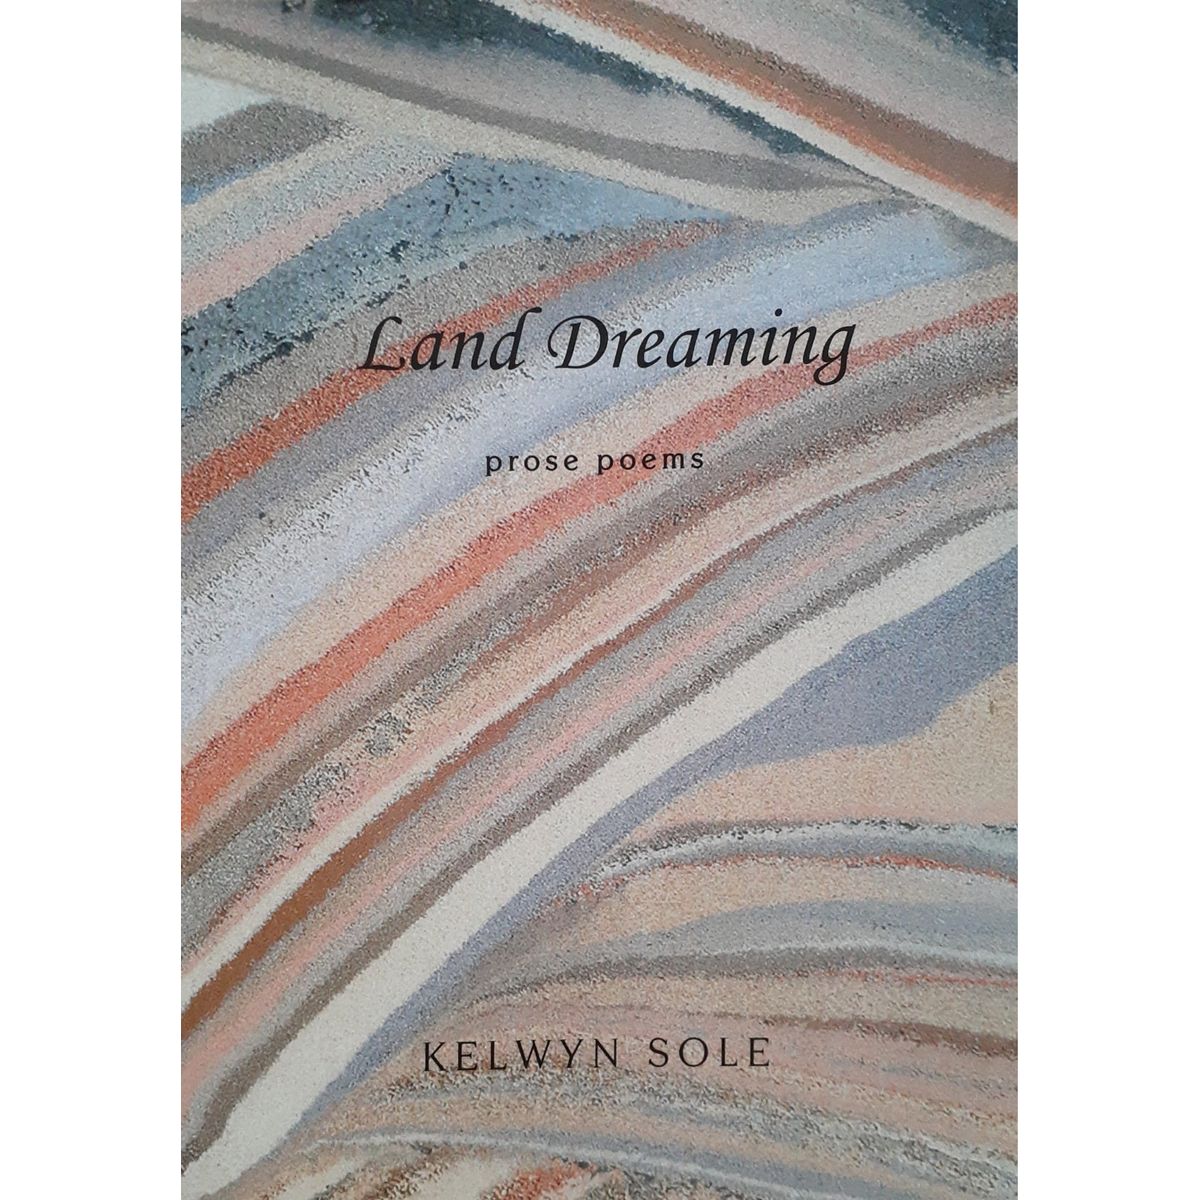 ISBN: 9781869140786 / 1869140788 - Land Dreaming: Prose Poems by Kelwyn Sole [2006]